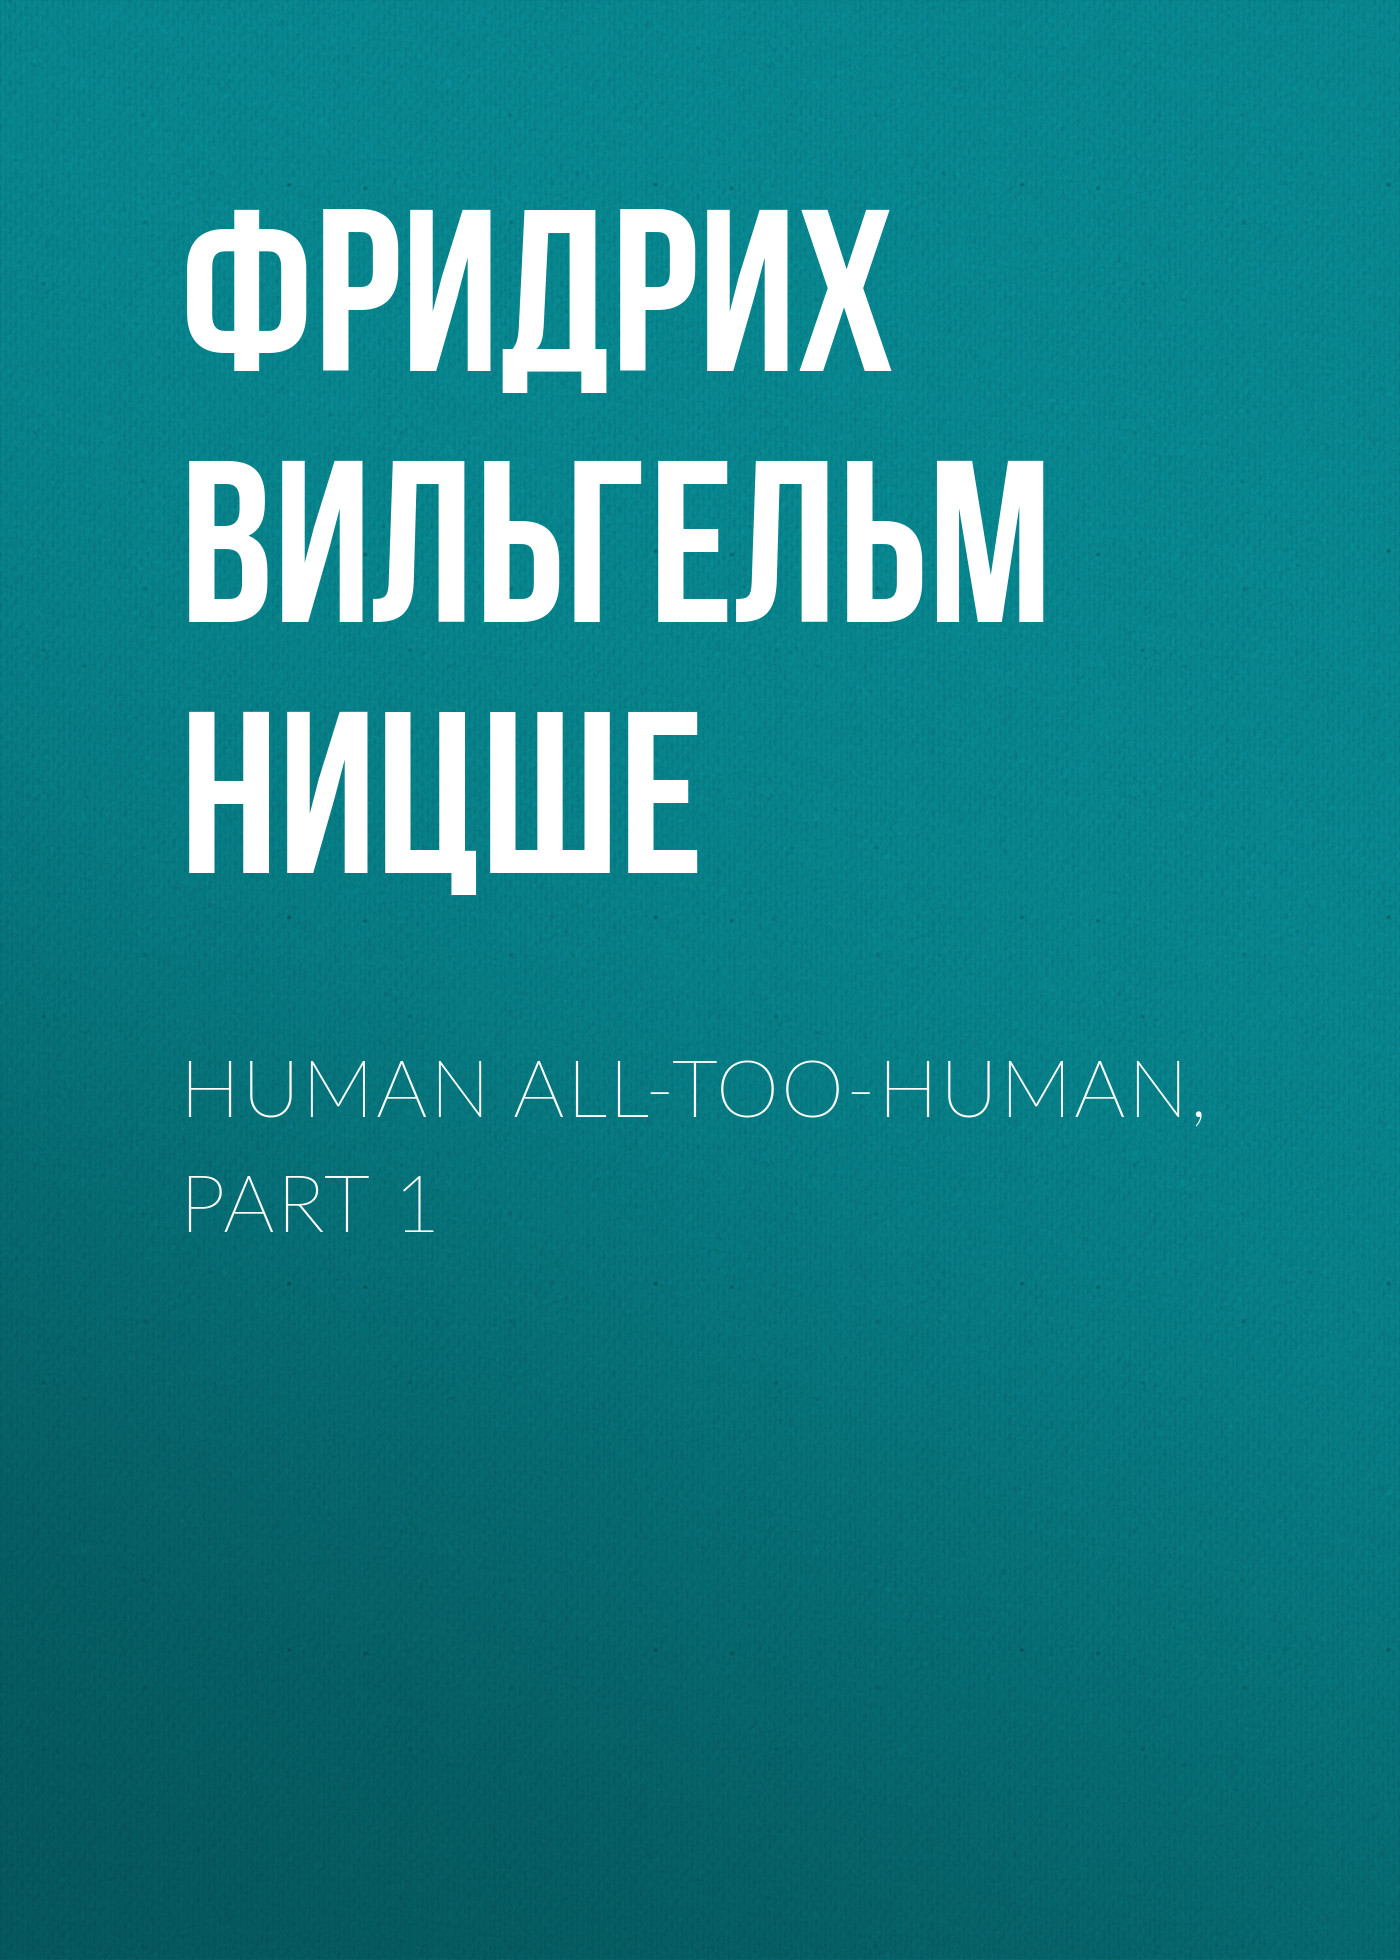 Книга Human All-Too-Human, Part 1 из серии , созданная Фридрих Ницше, может относится к жанру Философия, Литература 19 века, Зарубежная старинная литература, Зарубежная классика. Стоимость электронной книги Human All-Too-Human, Part 1 с идентификатором 25293515 составляет 0 руб.